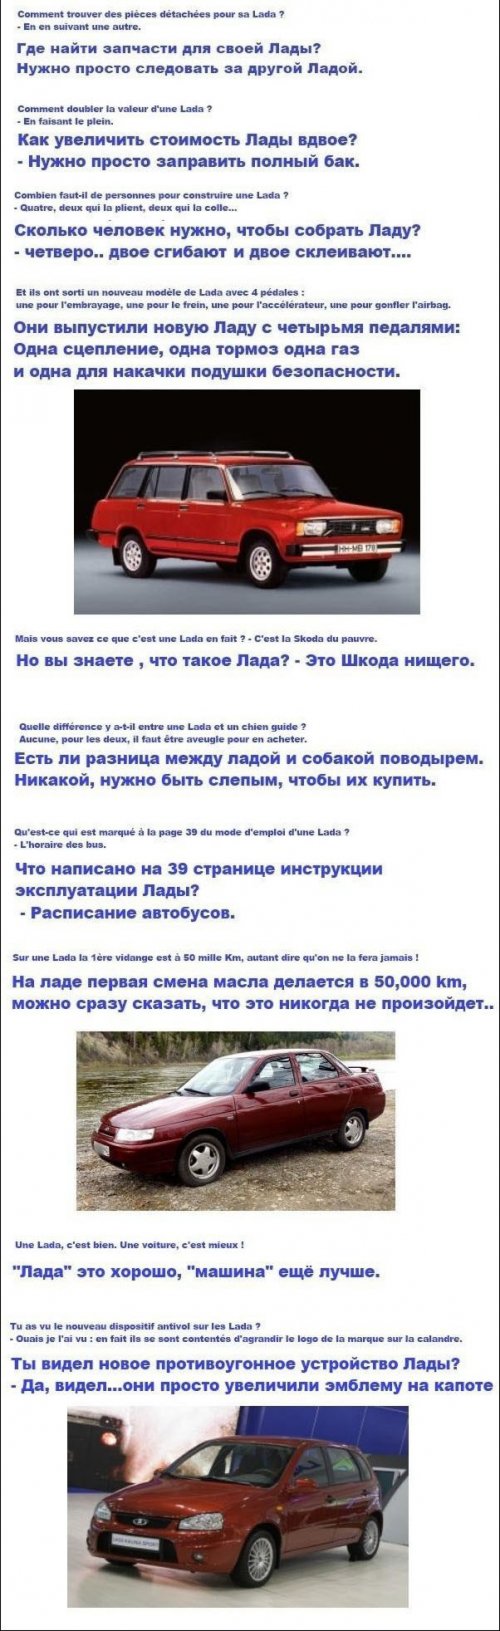 Французский юмор в вопросах и ответах про российский автомобиль Lada